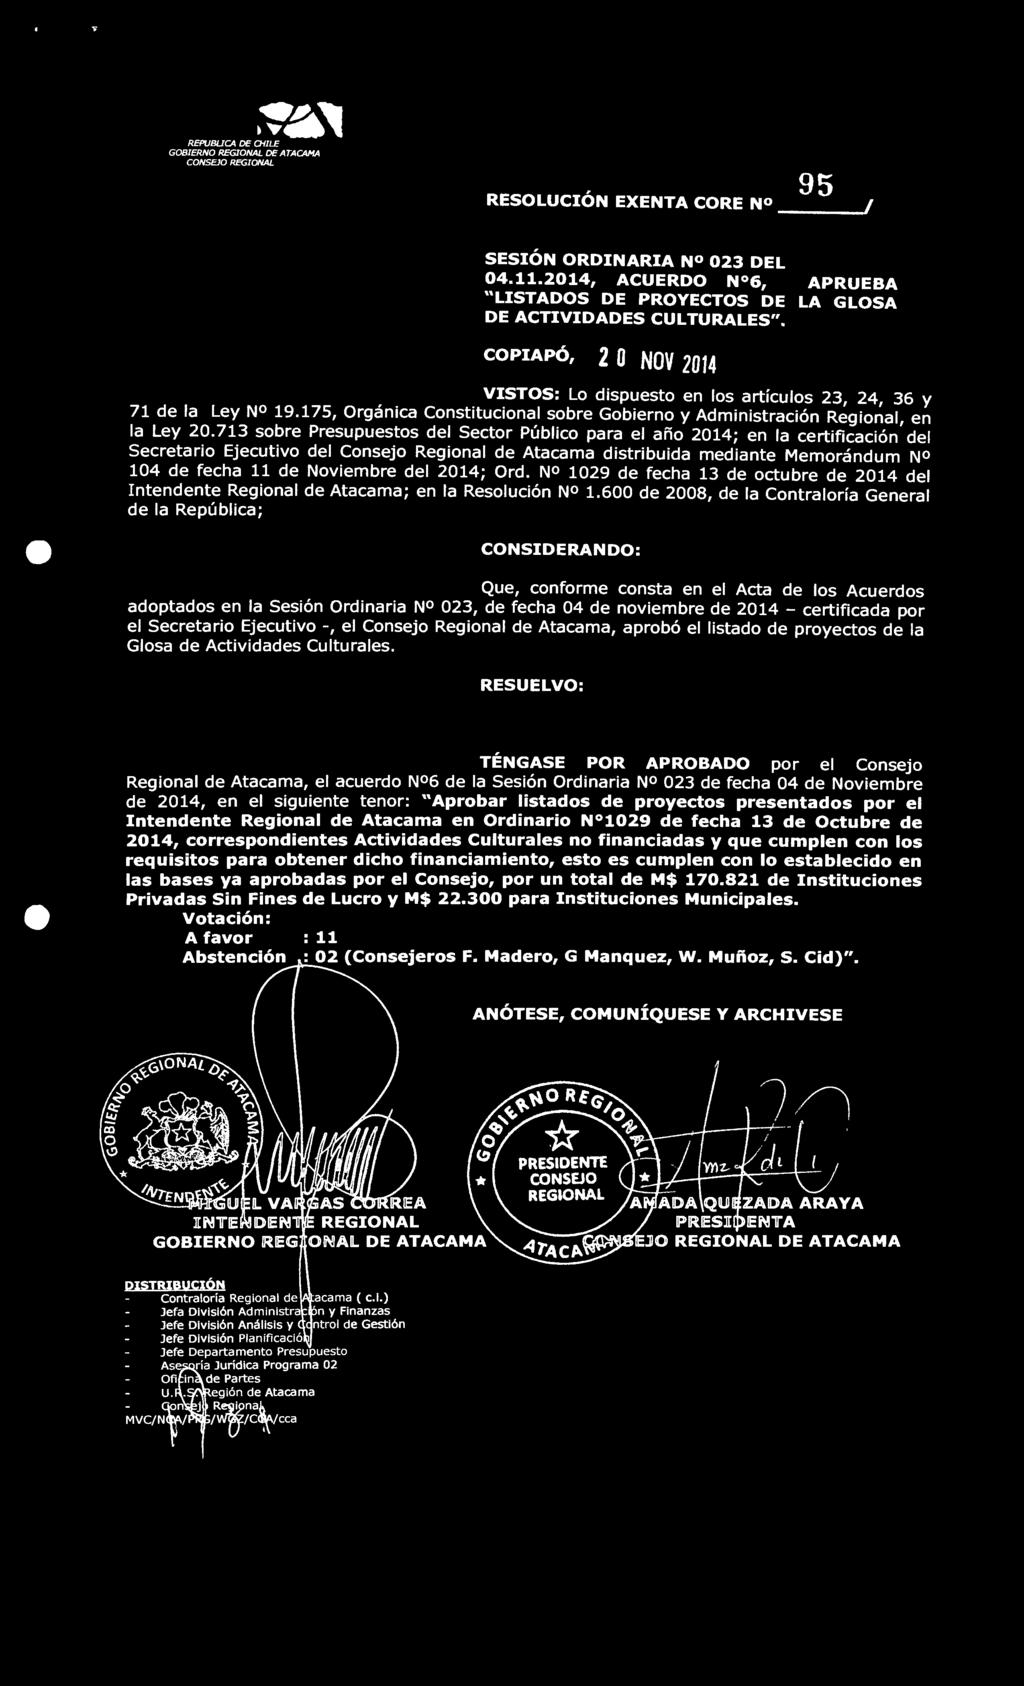 Noviembre del 2014; Ord. N 1029 de fecha 13 de octubre de 2014 del Intendente Regional de Atacama; en la Resolución NO 1.